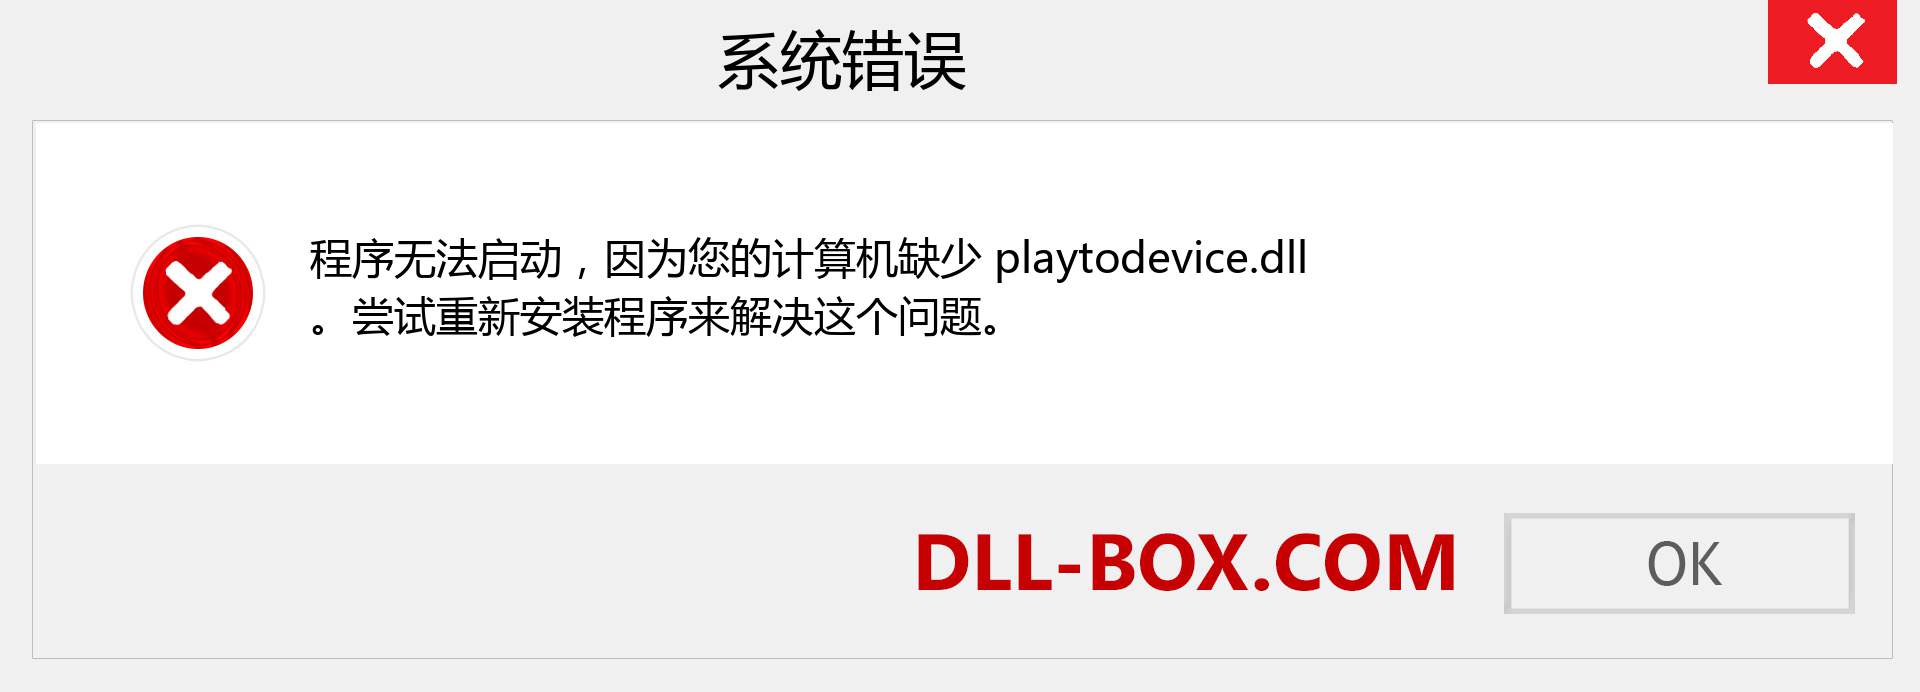 playtodevice.dll 文件丢失？。 适用于 Windows 7、8、10 的下载 - 修复 Windows、照片、图像上的 playtodevice dll 丢失错误